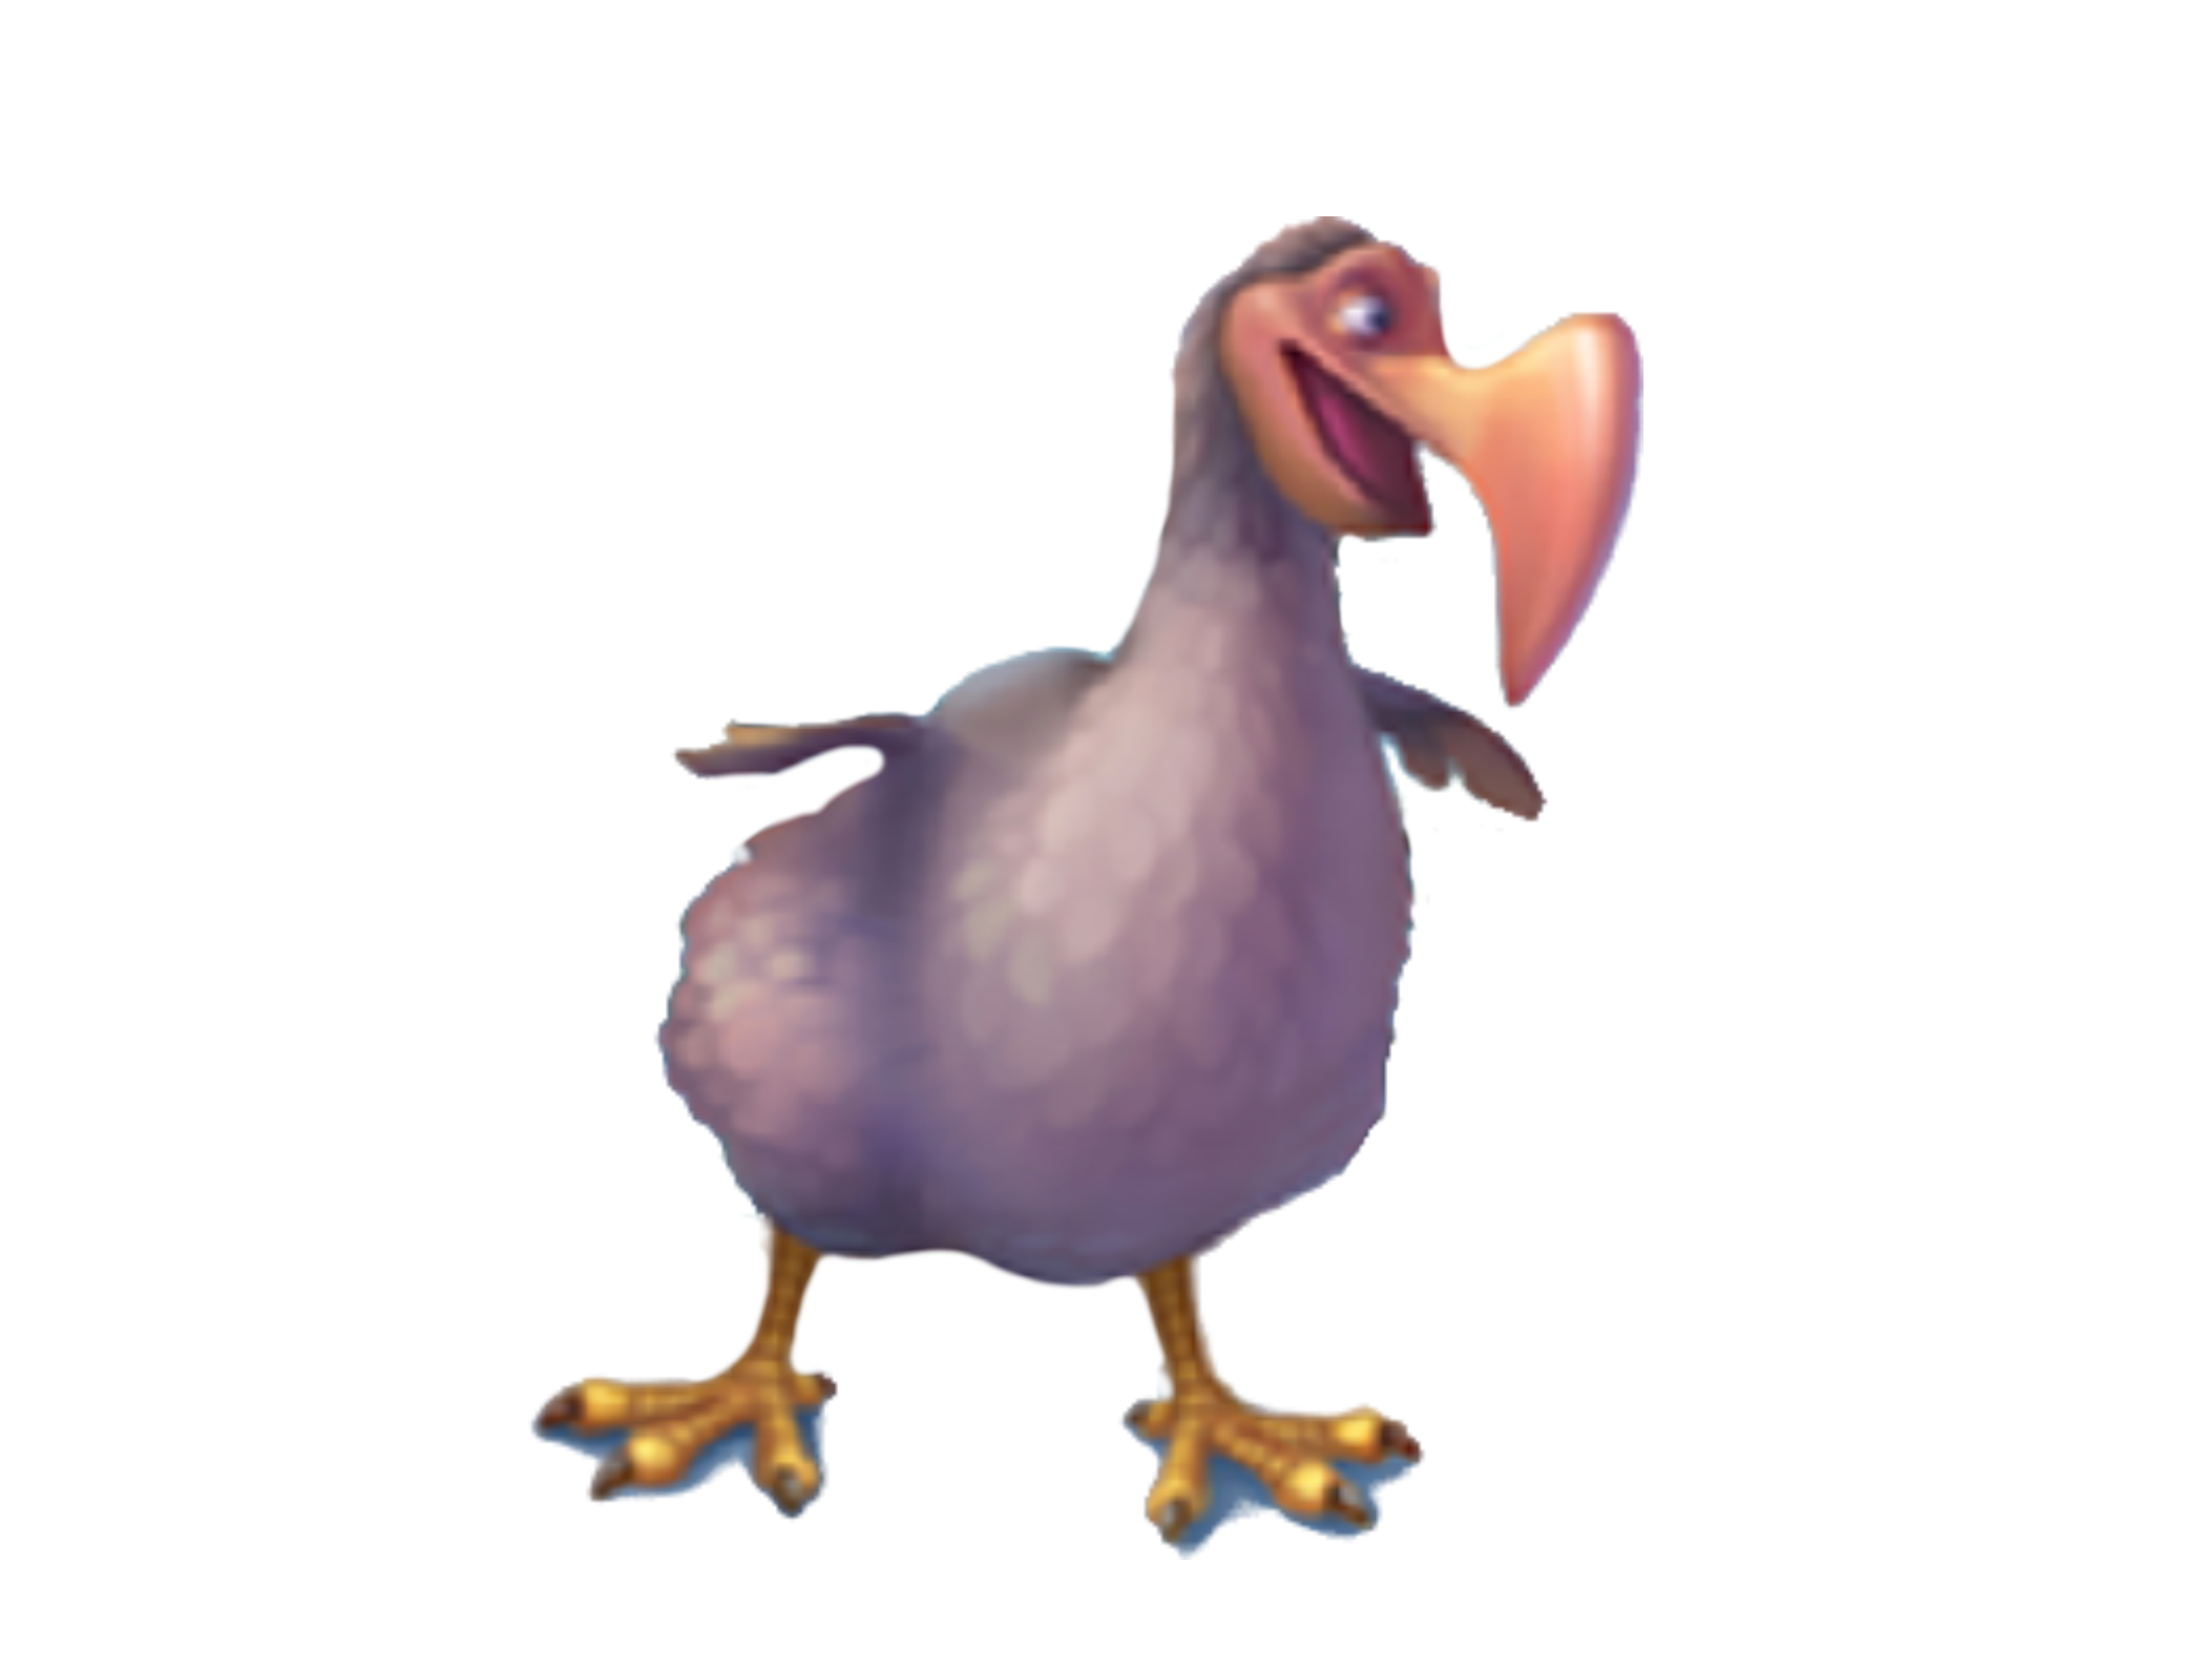 dodo bird images